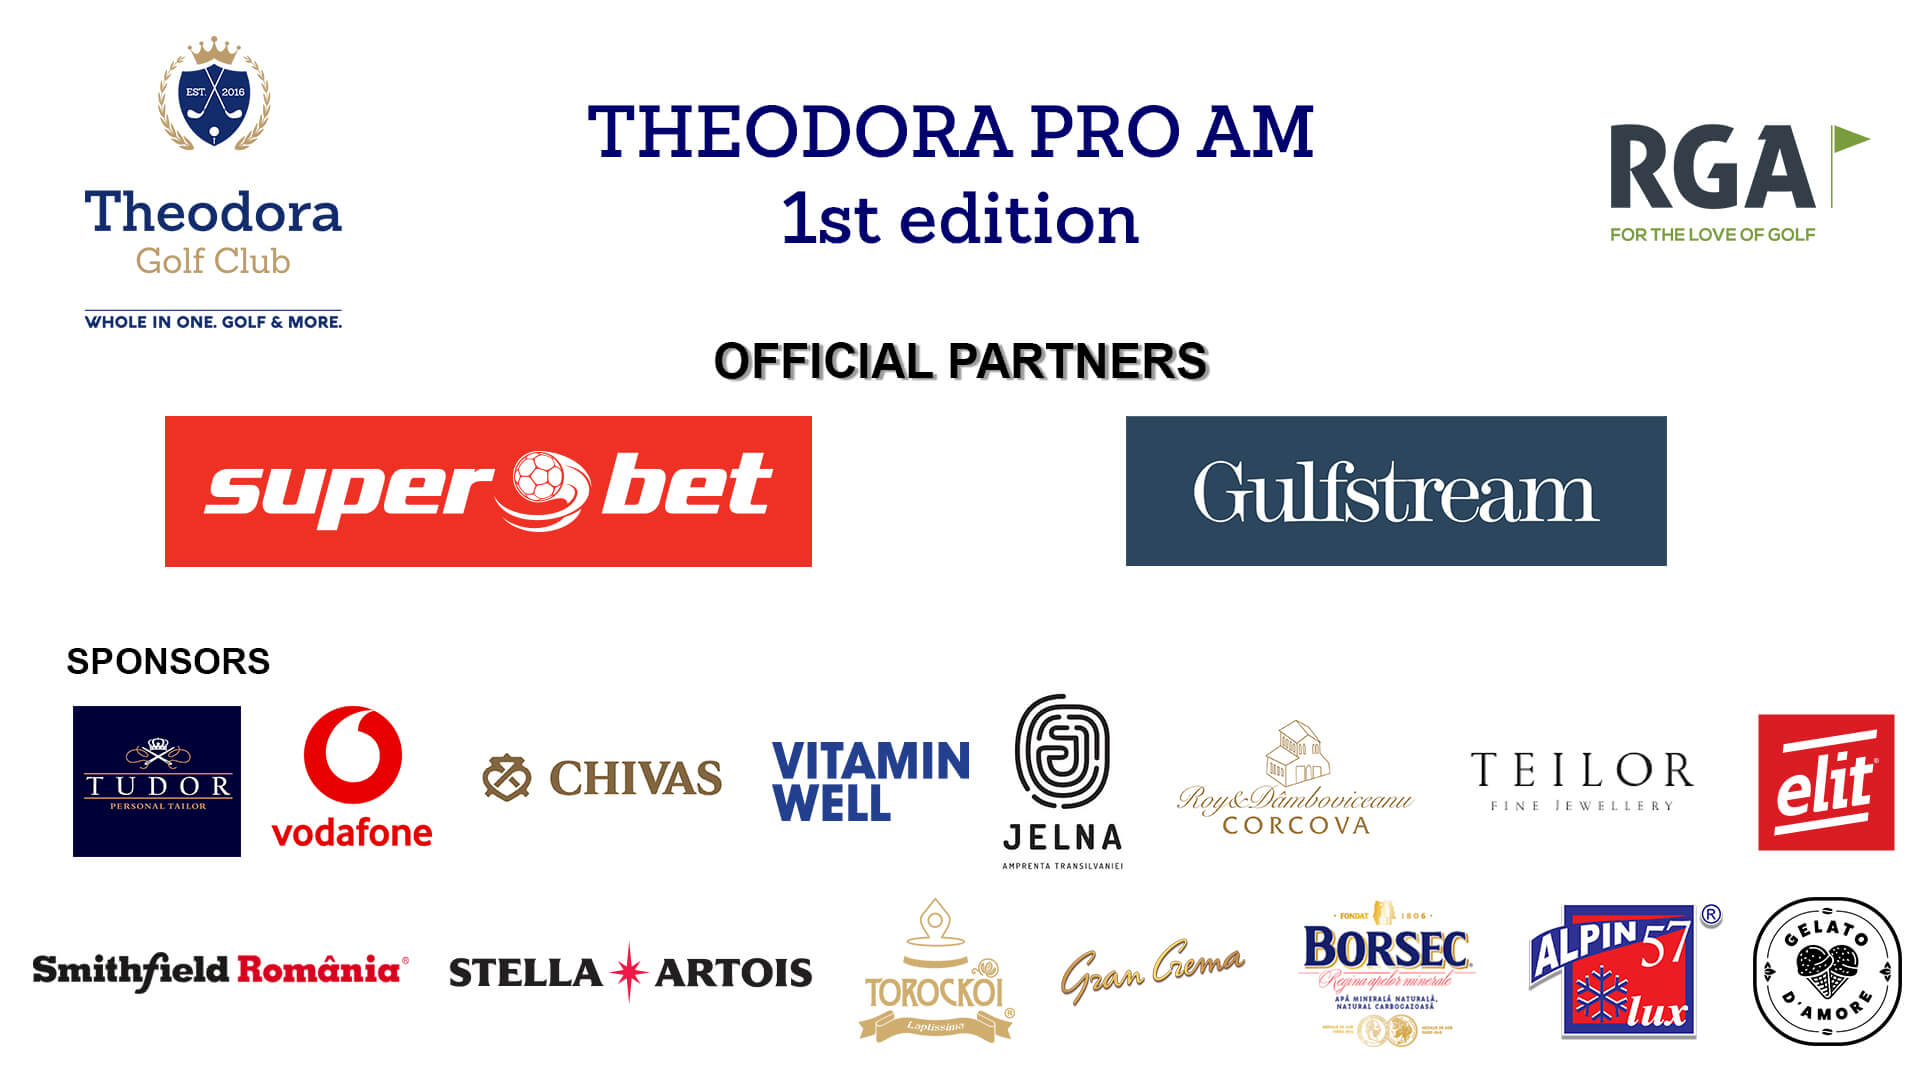 Theodora Pro Am 2019